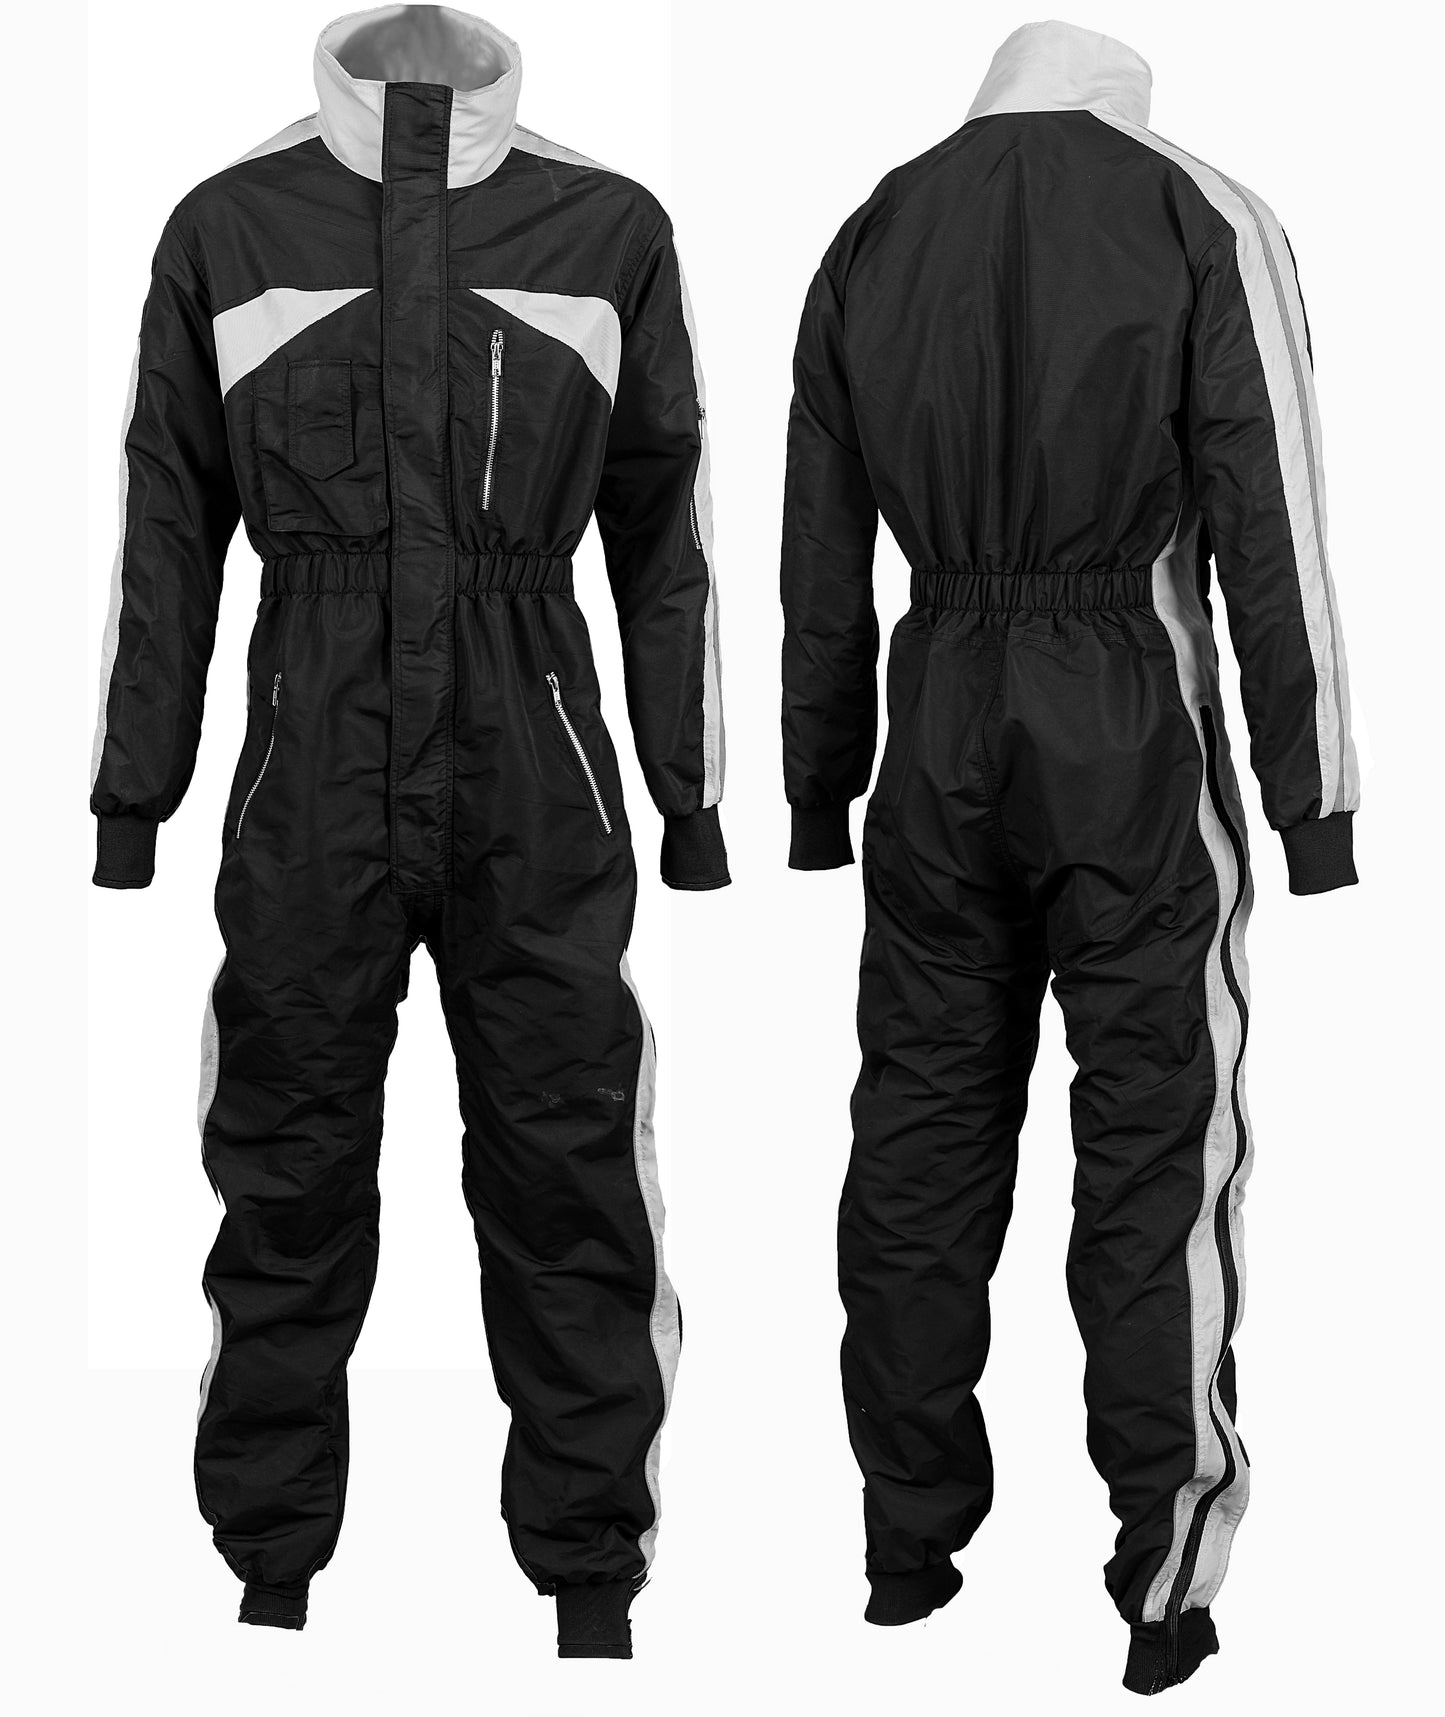 Latest Design Paragliding suit de//-01